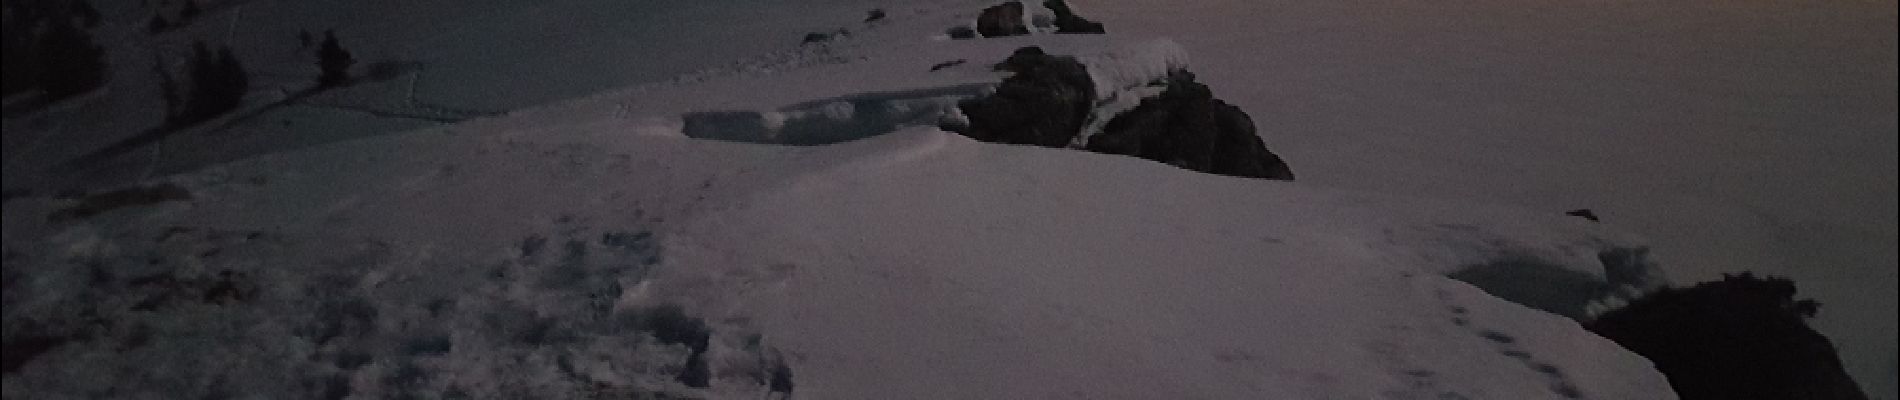 Randonnée Raquettes à neige Lans-en-Vercors - La Crête des Ramées de nuit en raquettes (2018) - Photo